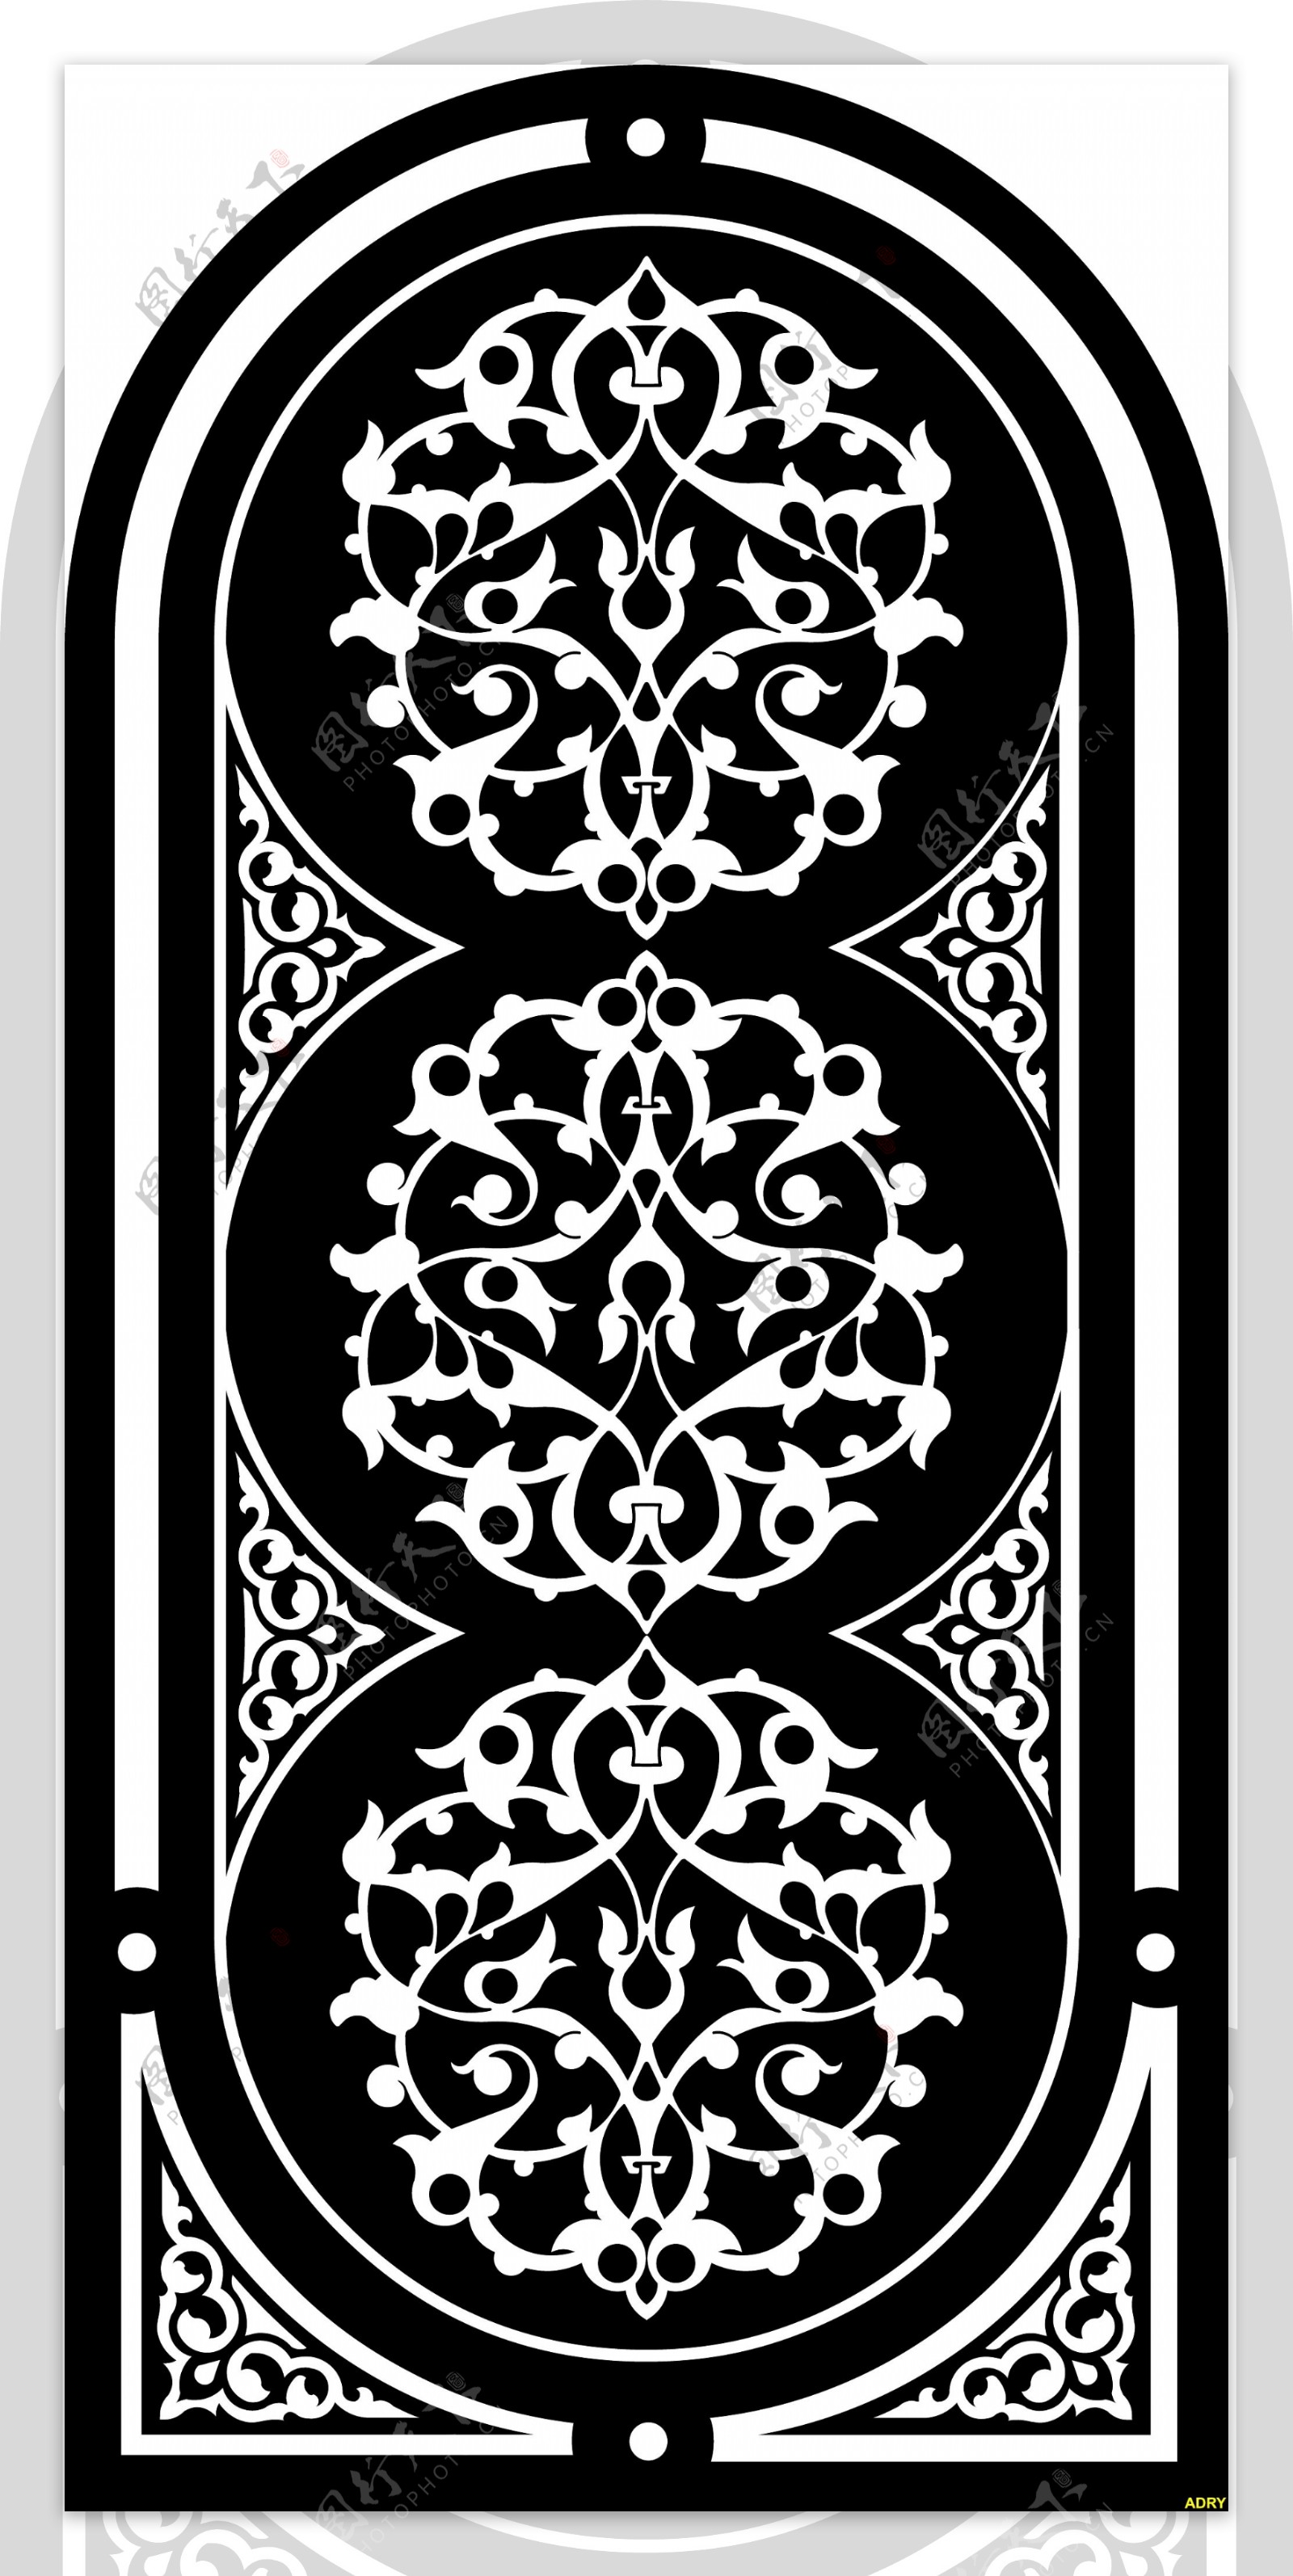 黑色和白色的欧式风格的栅极图案矢量素材2